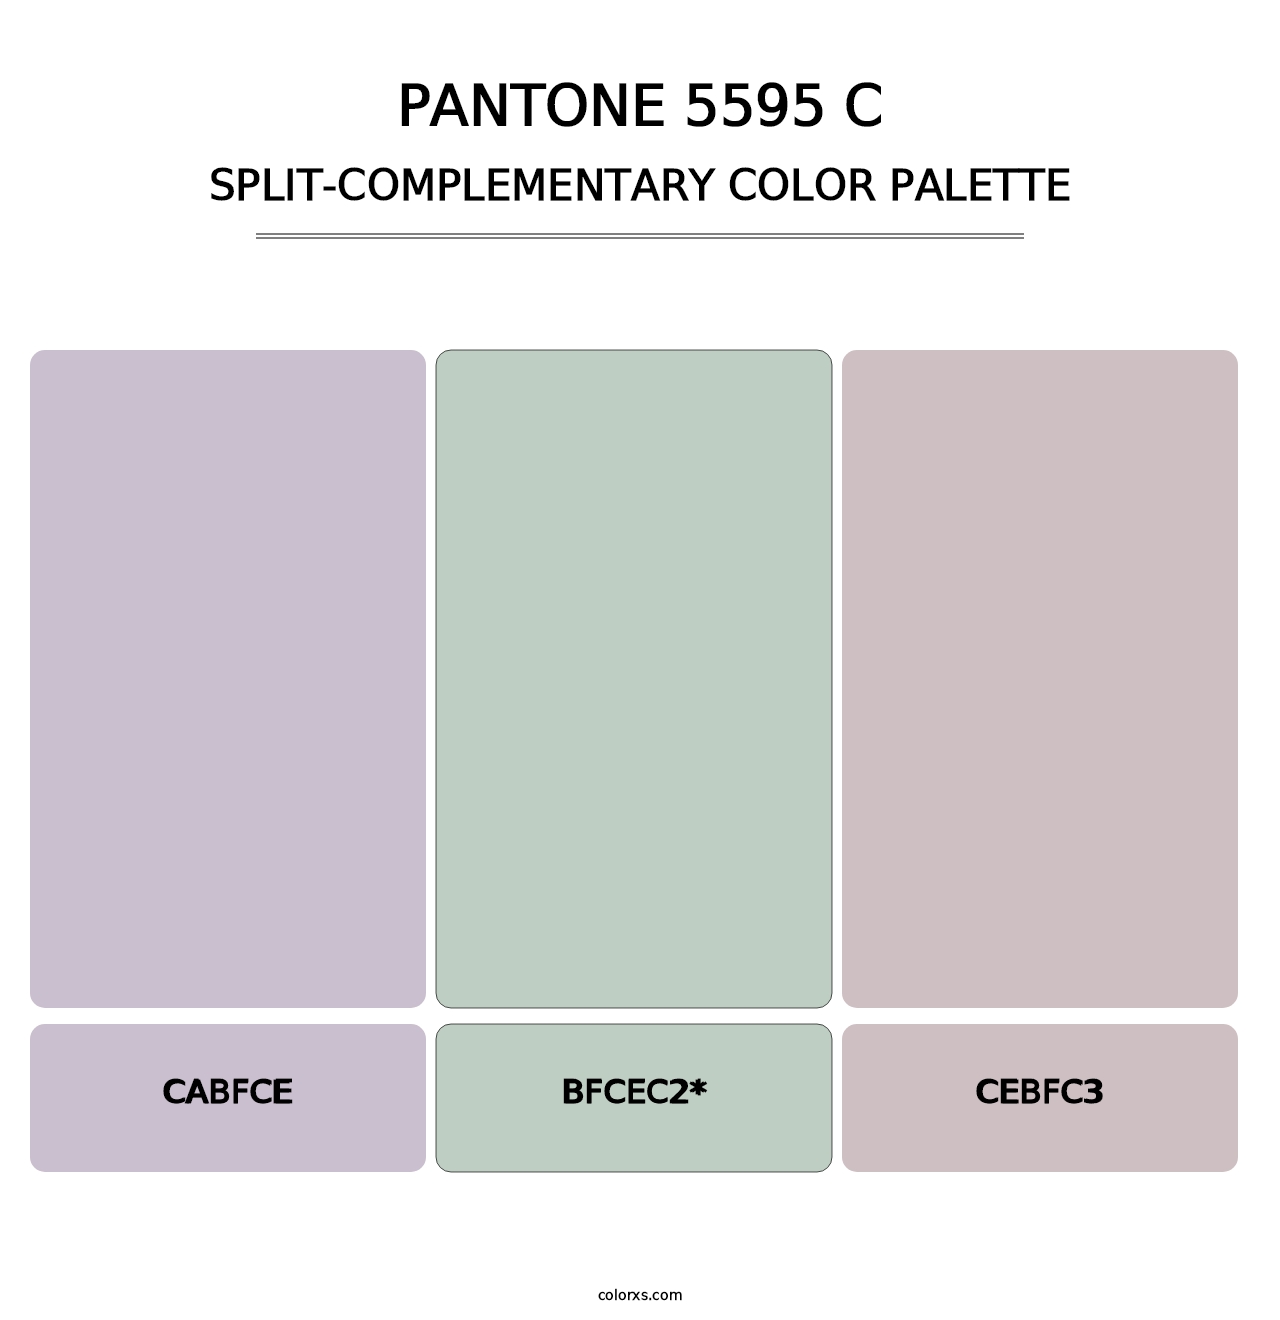 PANTONE 5595 C - Split-Complementary Color Palette